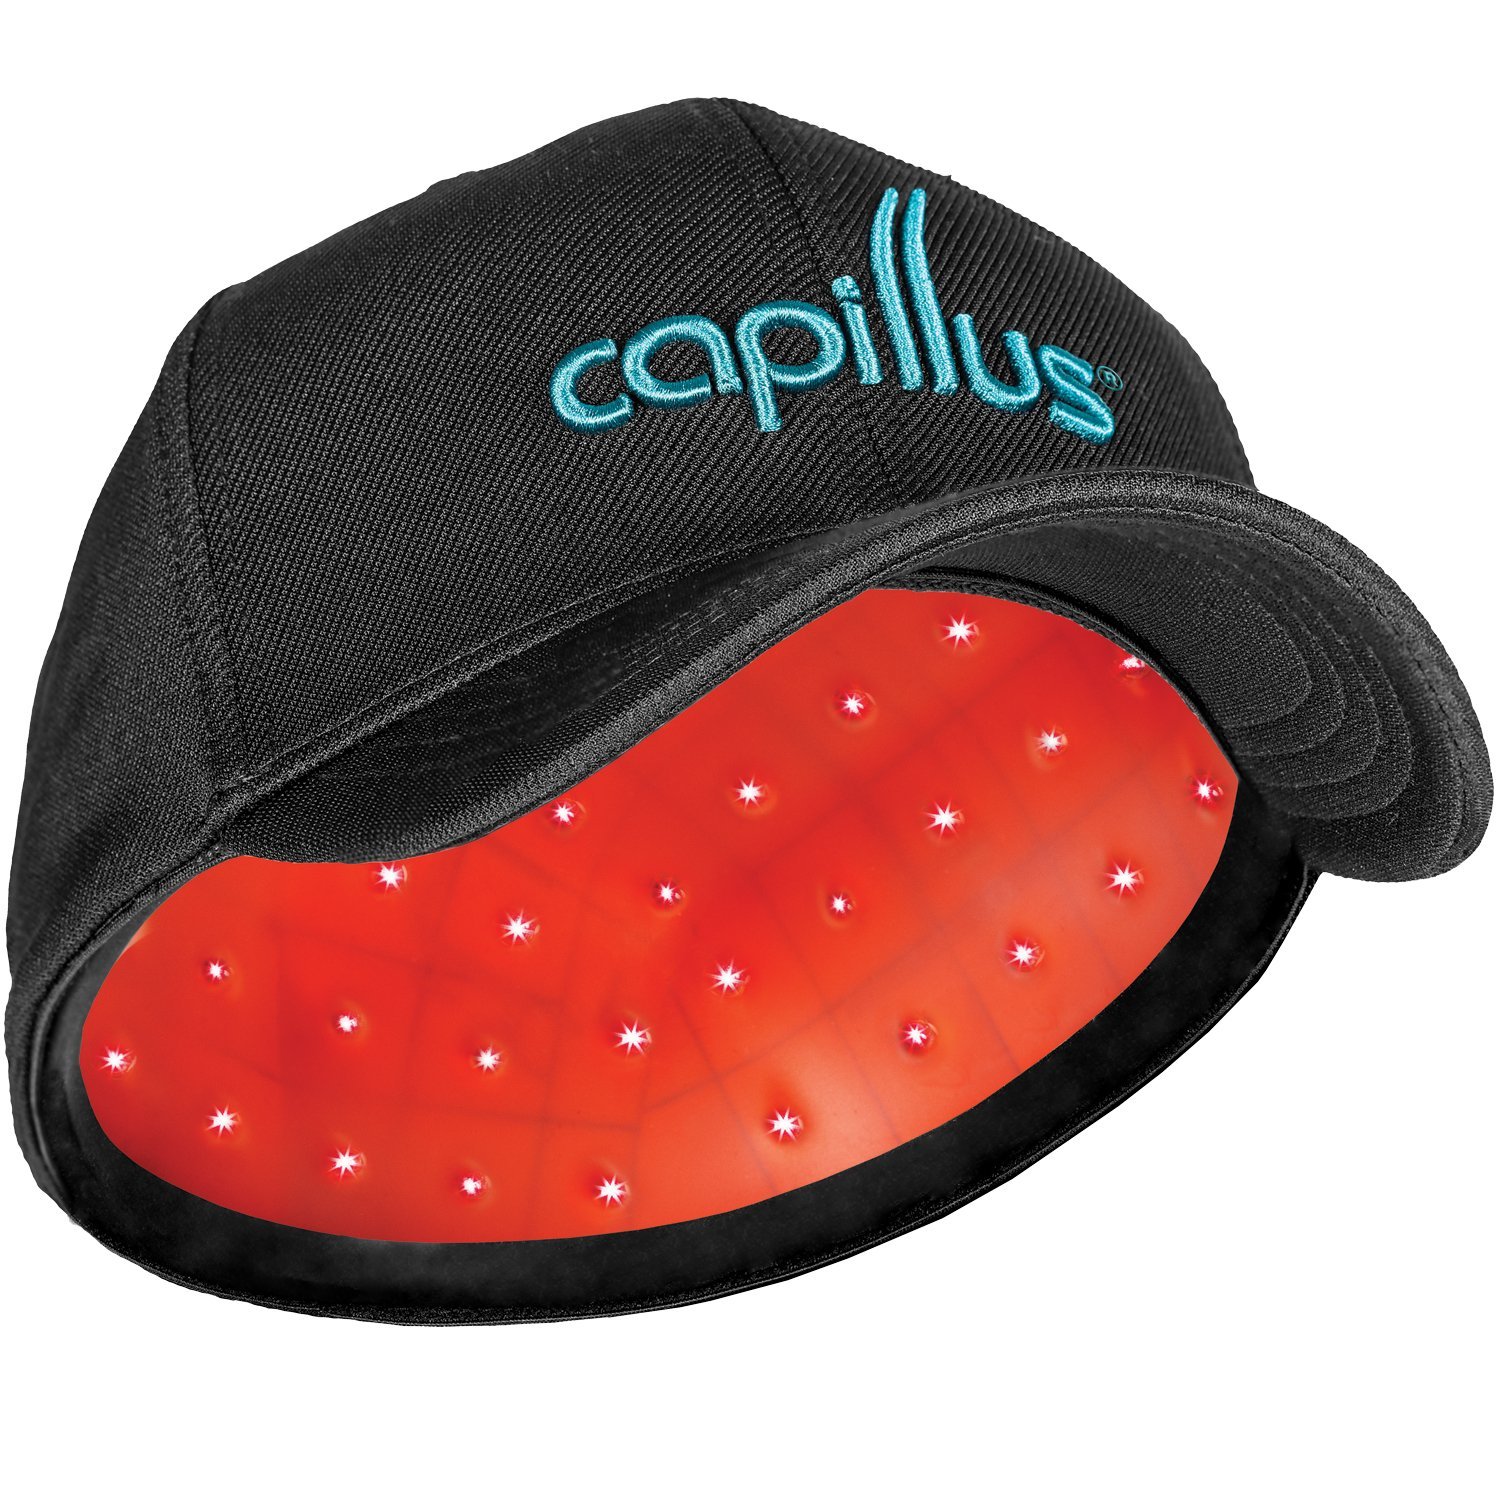 Capillus Cap